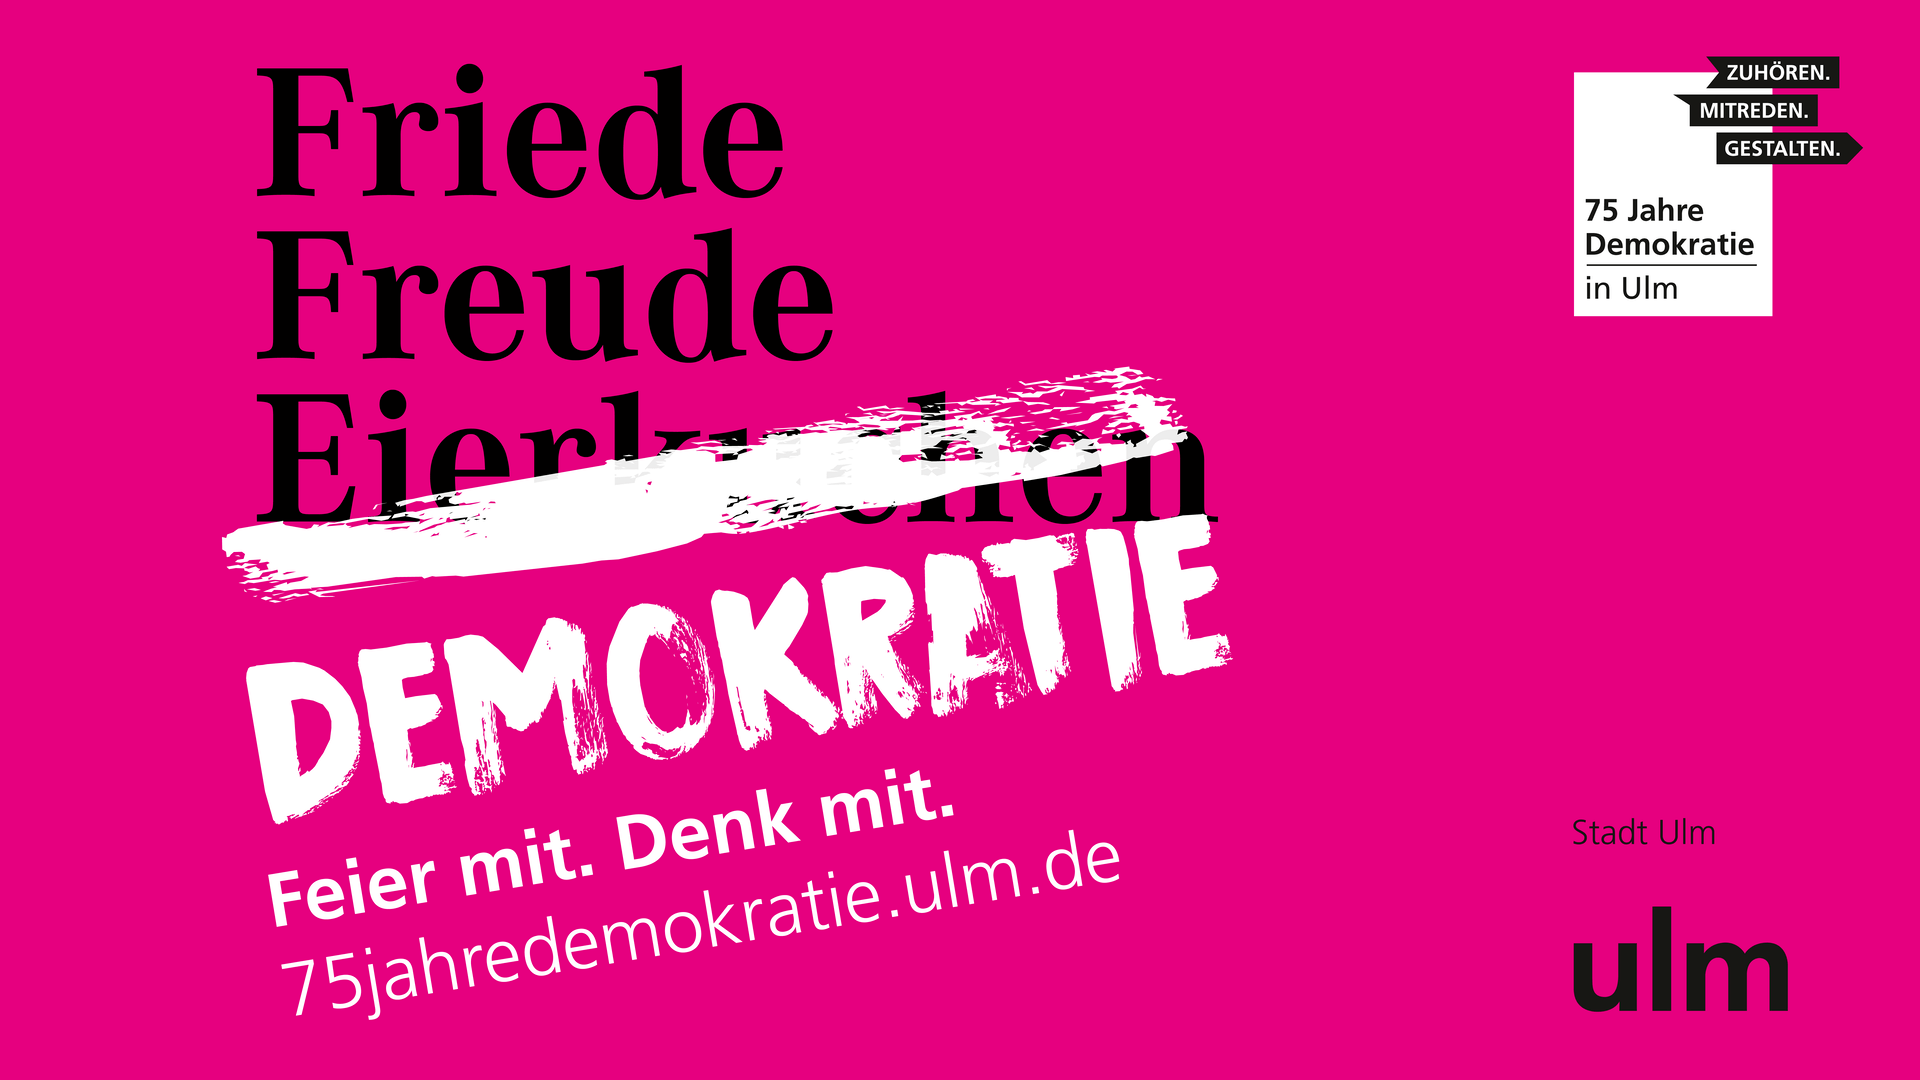 Slogan Friede Freude Eierkuchen/Demokratie